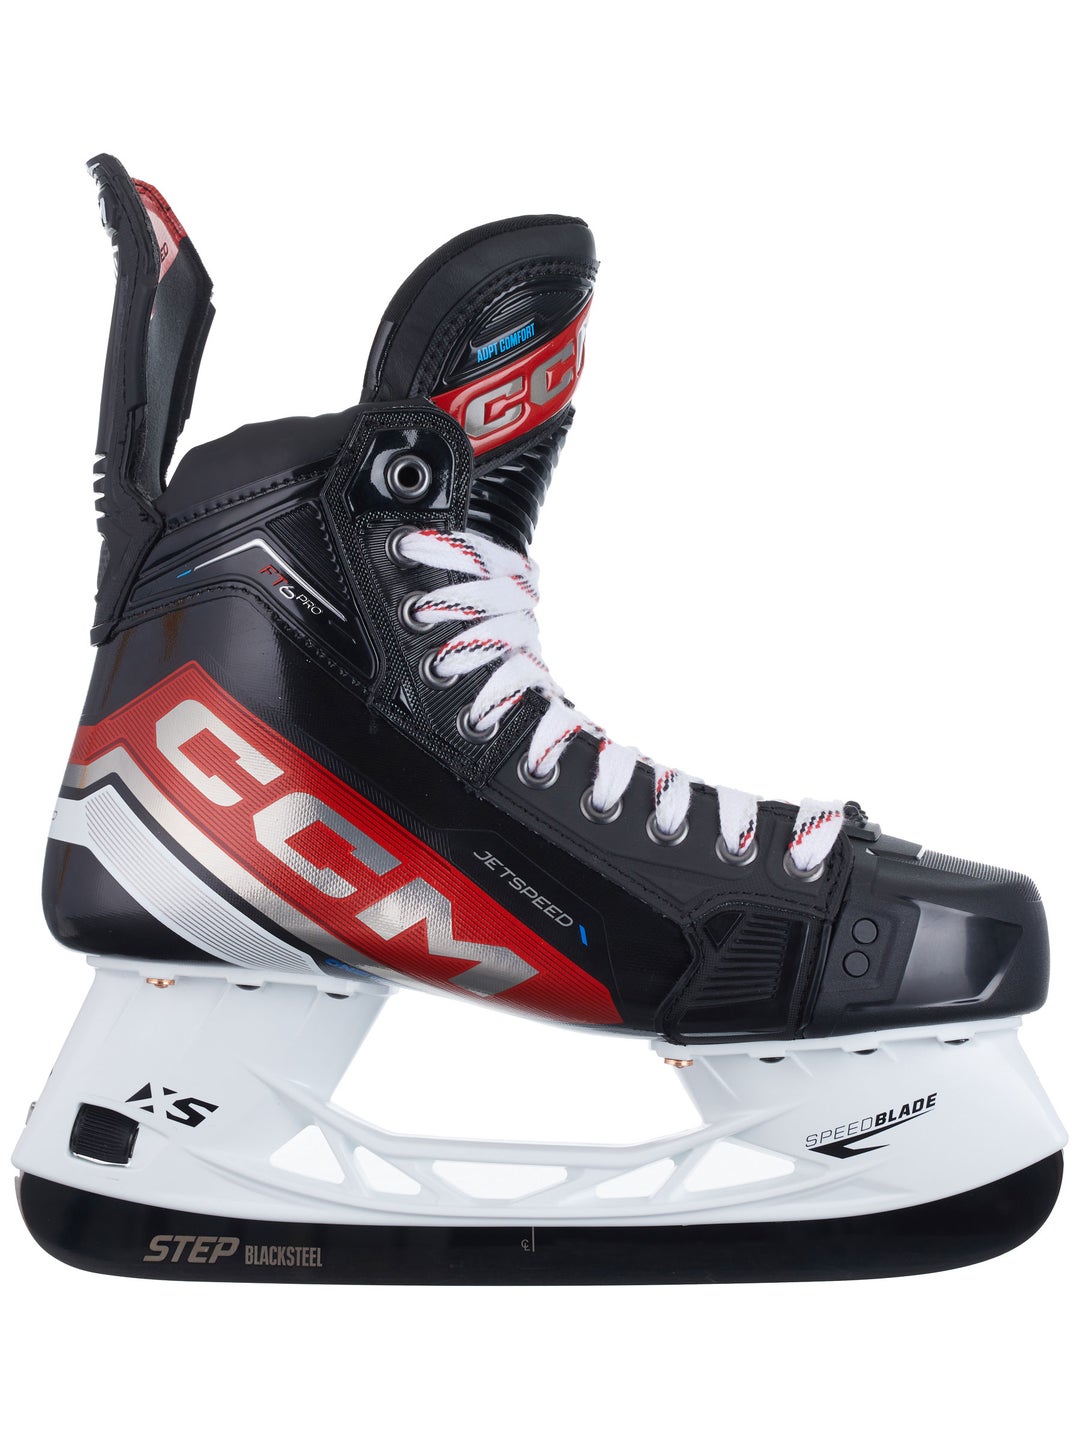 CCM JetSpeed FT6 Pro hockey skate image